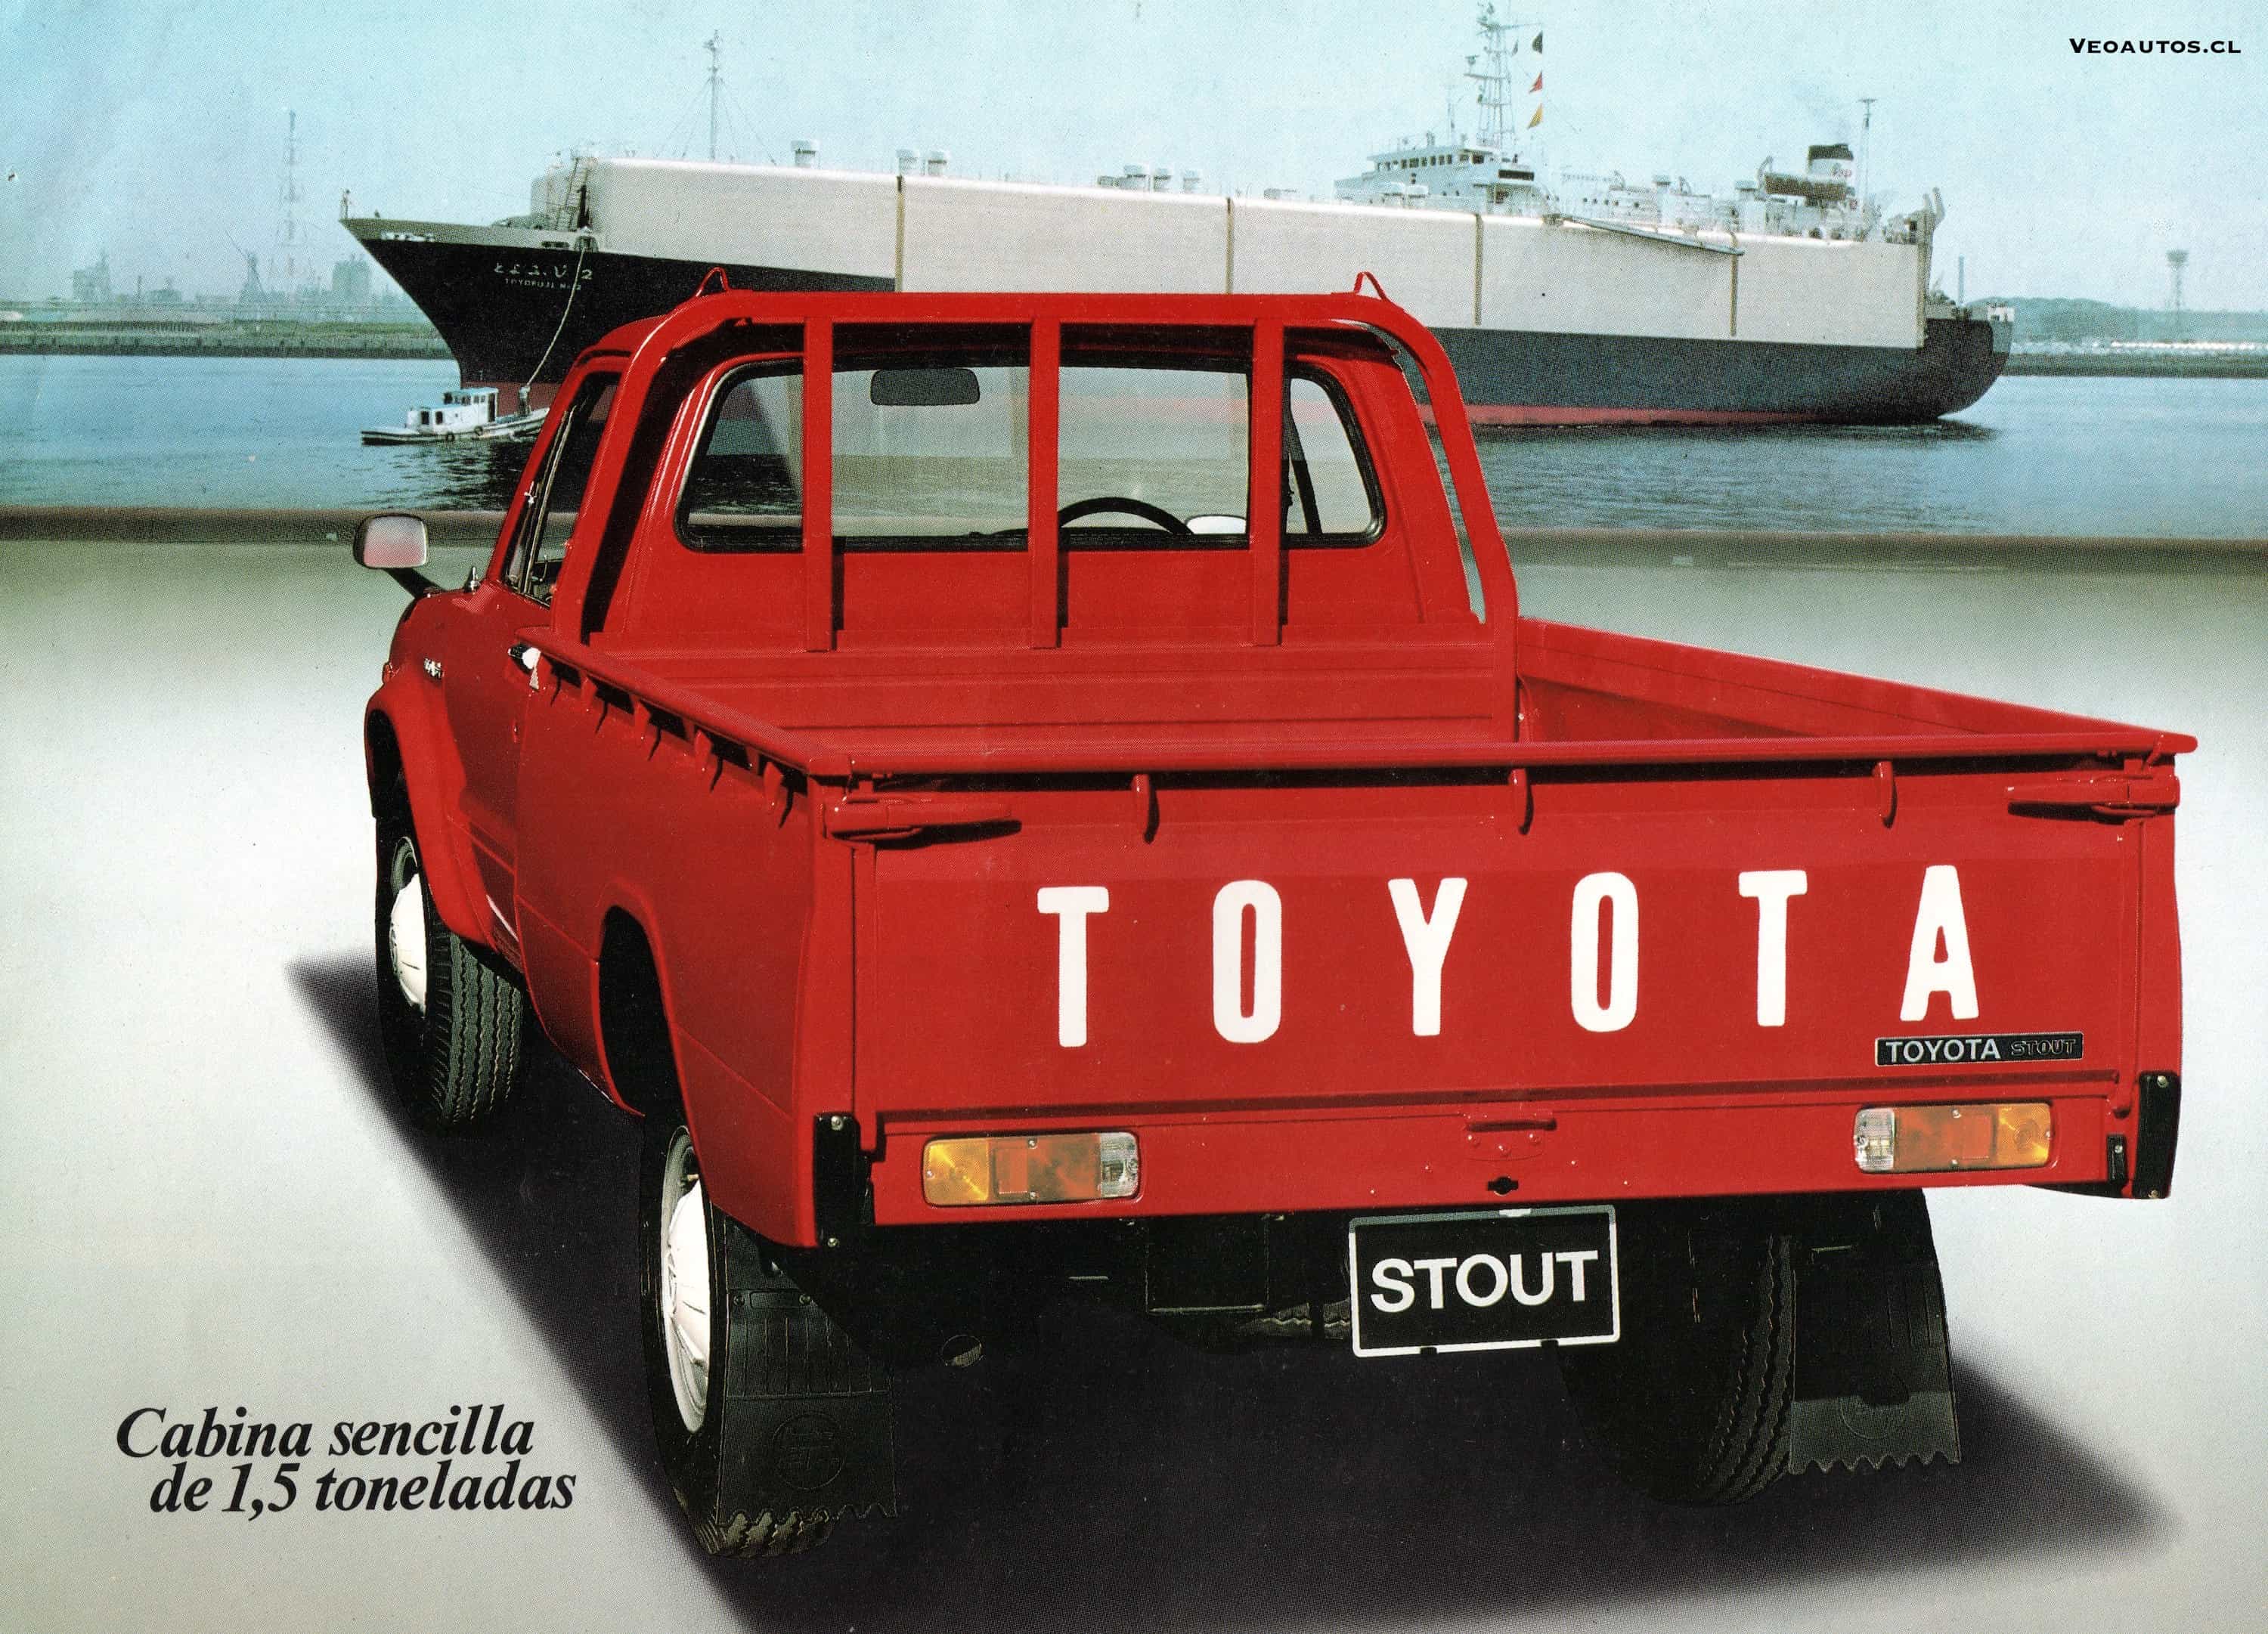 toyotastout-chile-brochure-veoautos-1981